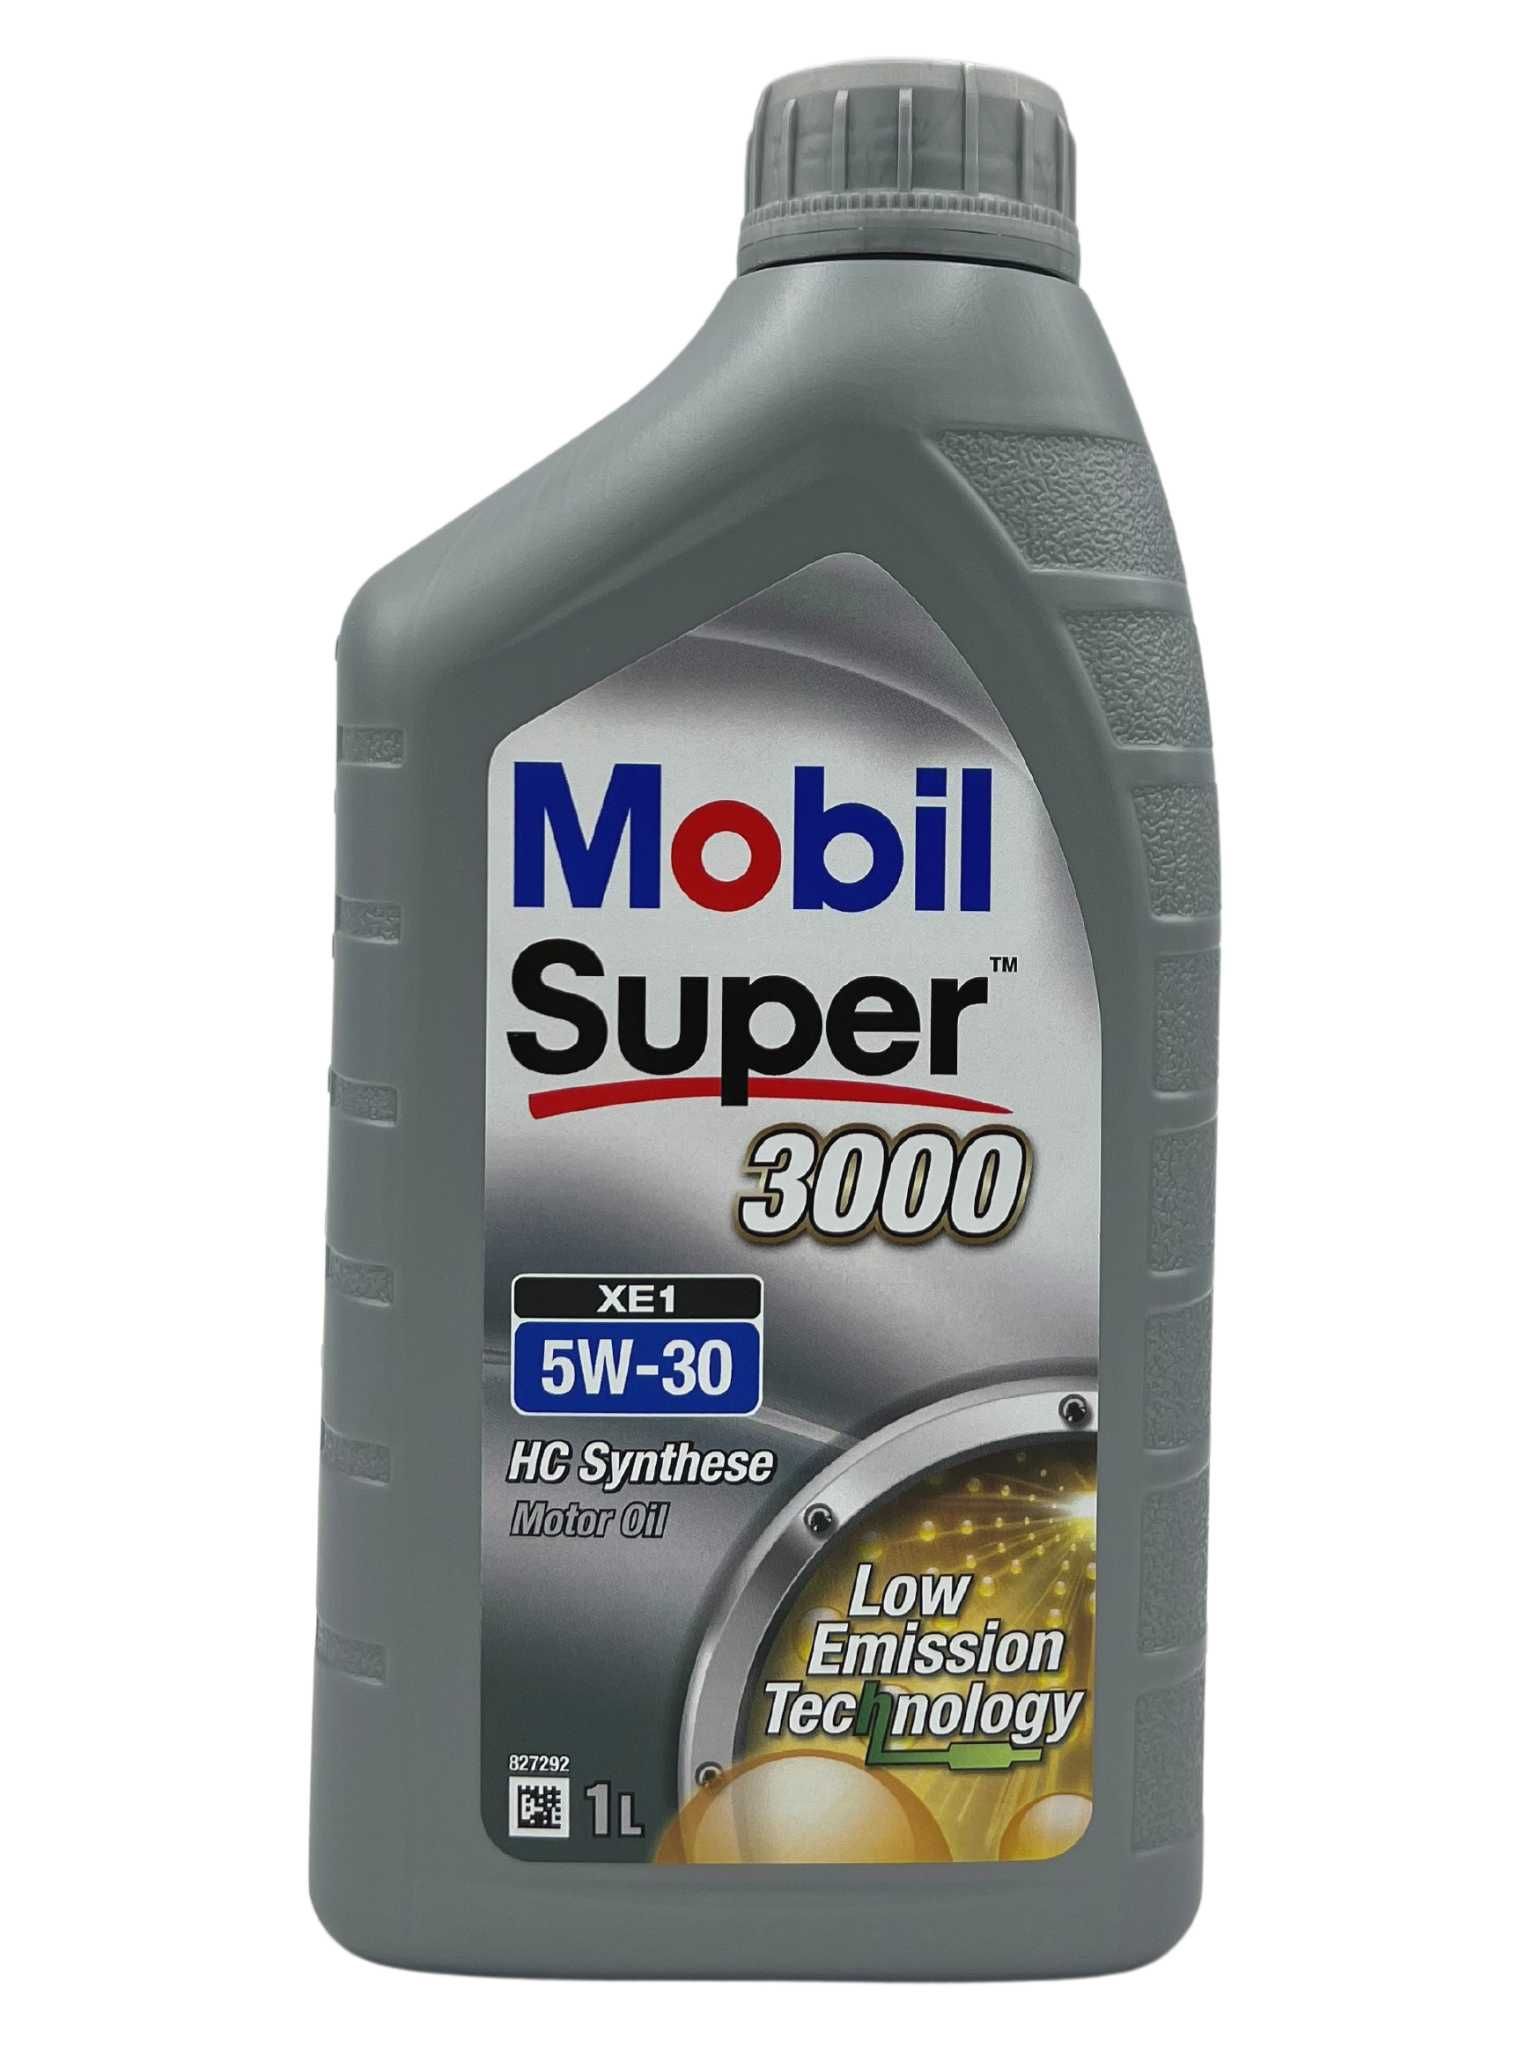 Mobil Super 3000 XE1 5W-30 1 Liter